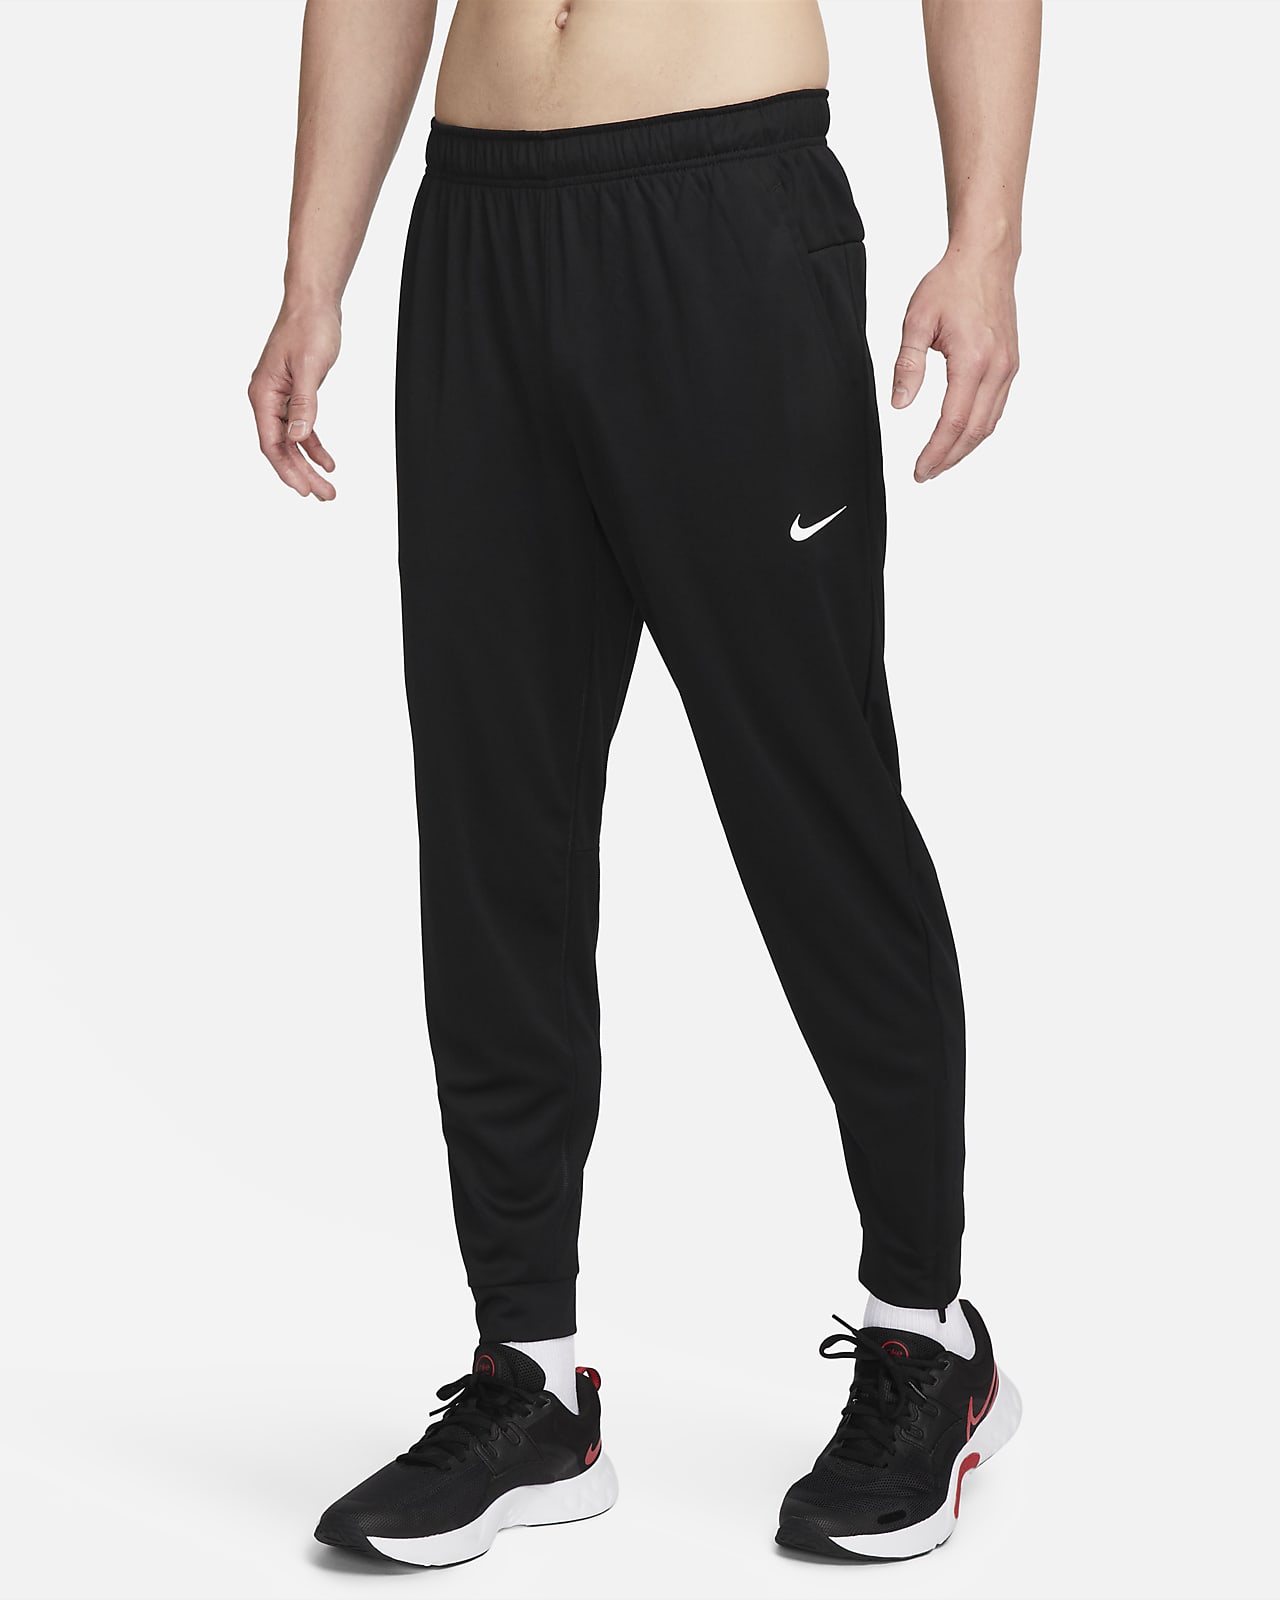 Problem komplet Smil Faconsyede, alsidige Nike Totality Dri-FIT-bukser til mænd. Nike DK